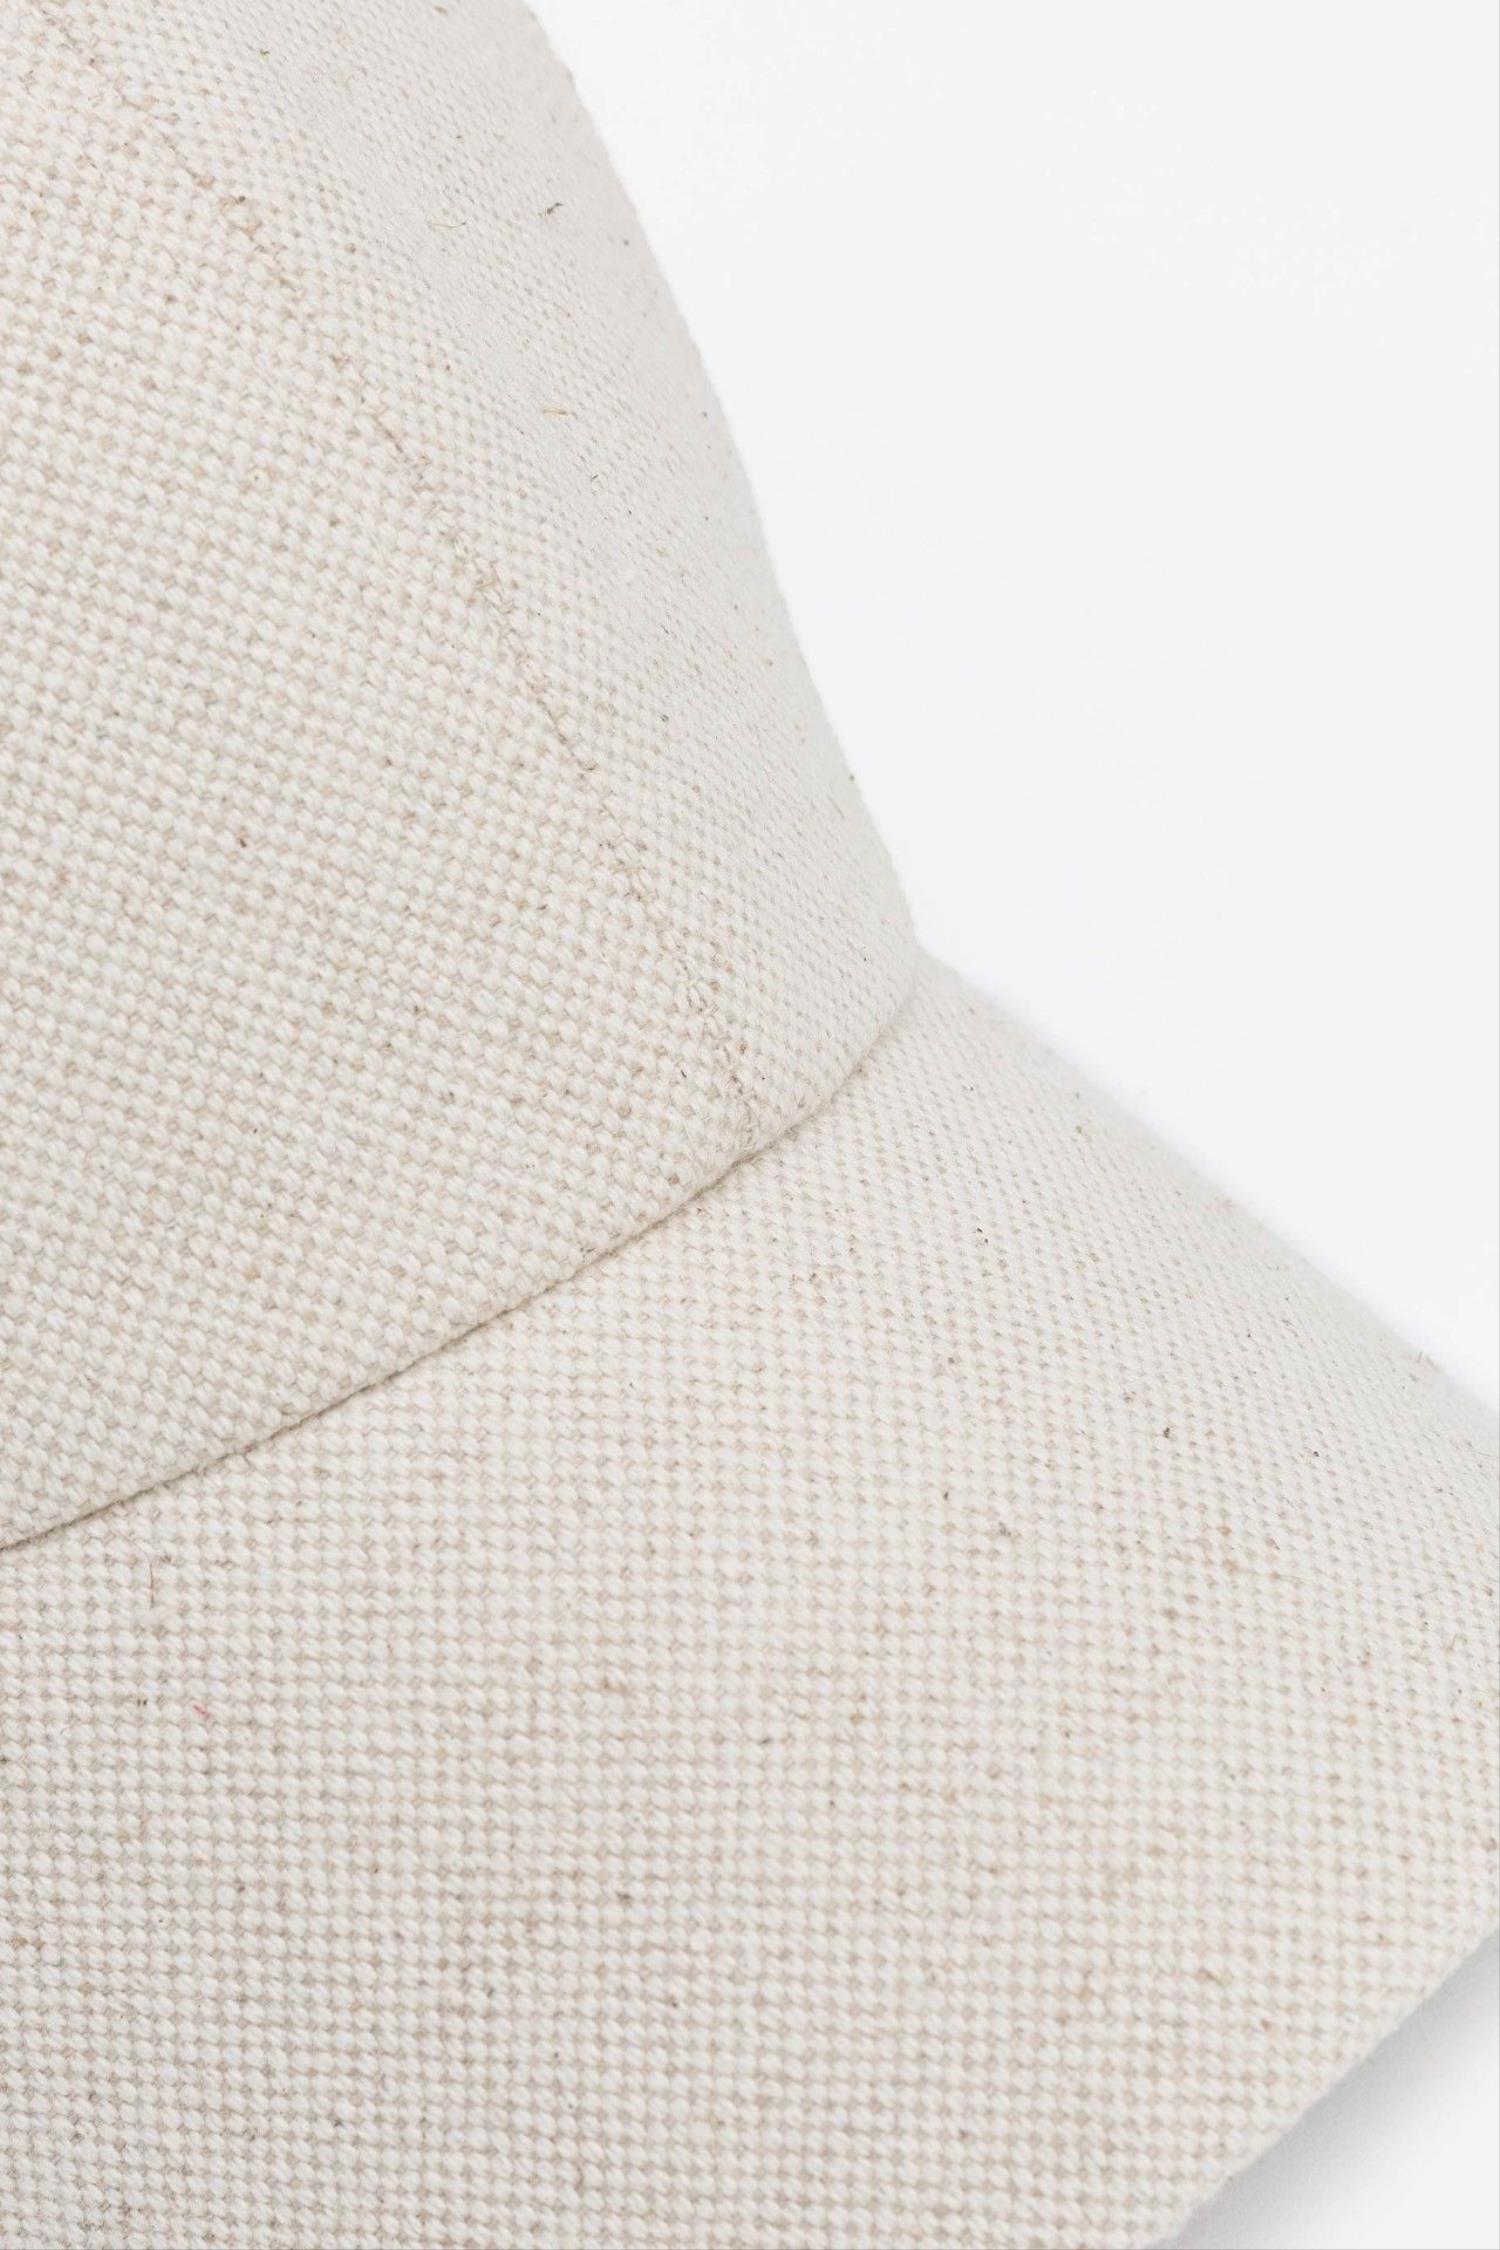 Gorra en color blanco de la marca Vilanova con referencia 71007812_150.